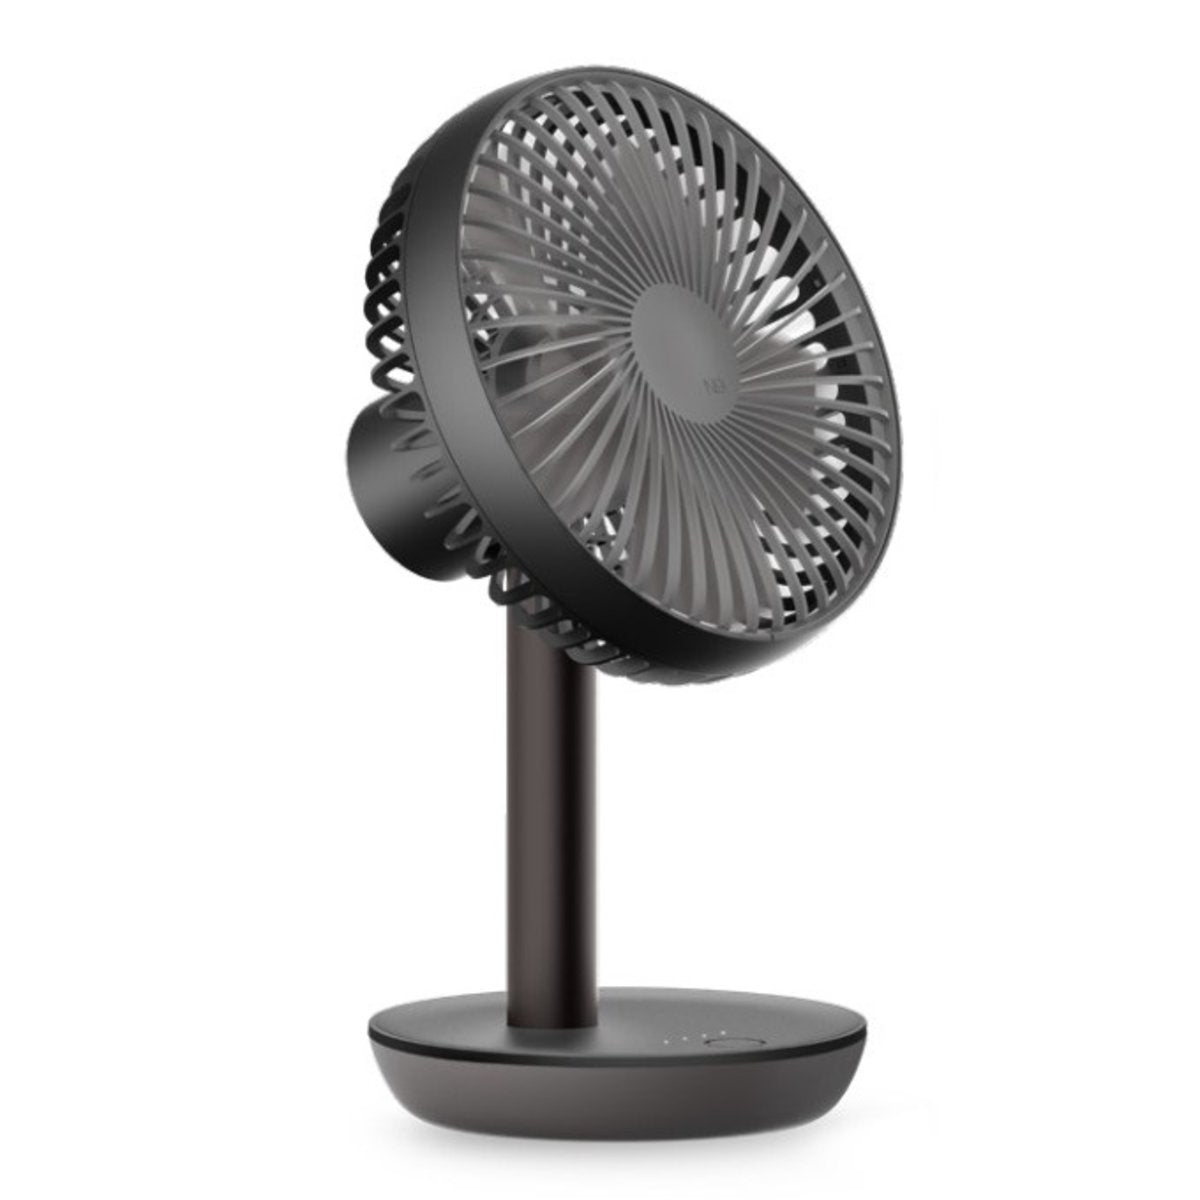 Lumena - N9 FAN STAND2 Second Generation Cordless Desk Fan｜Moving Head Fan-Black